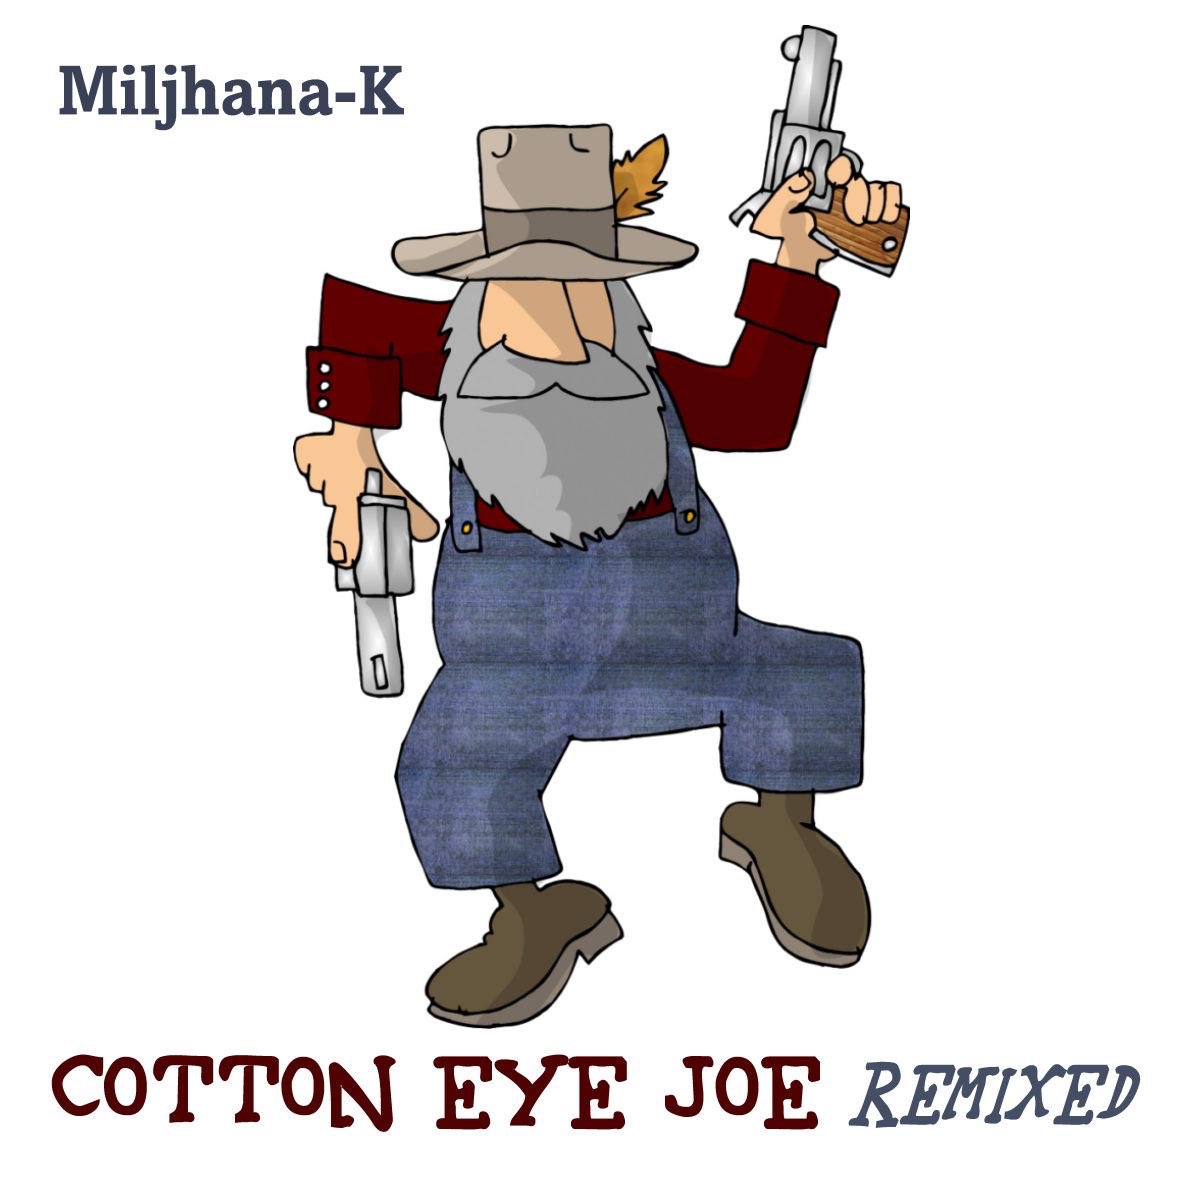 Cotton eye joe ремикс